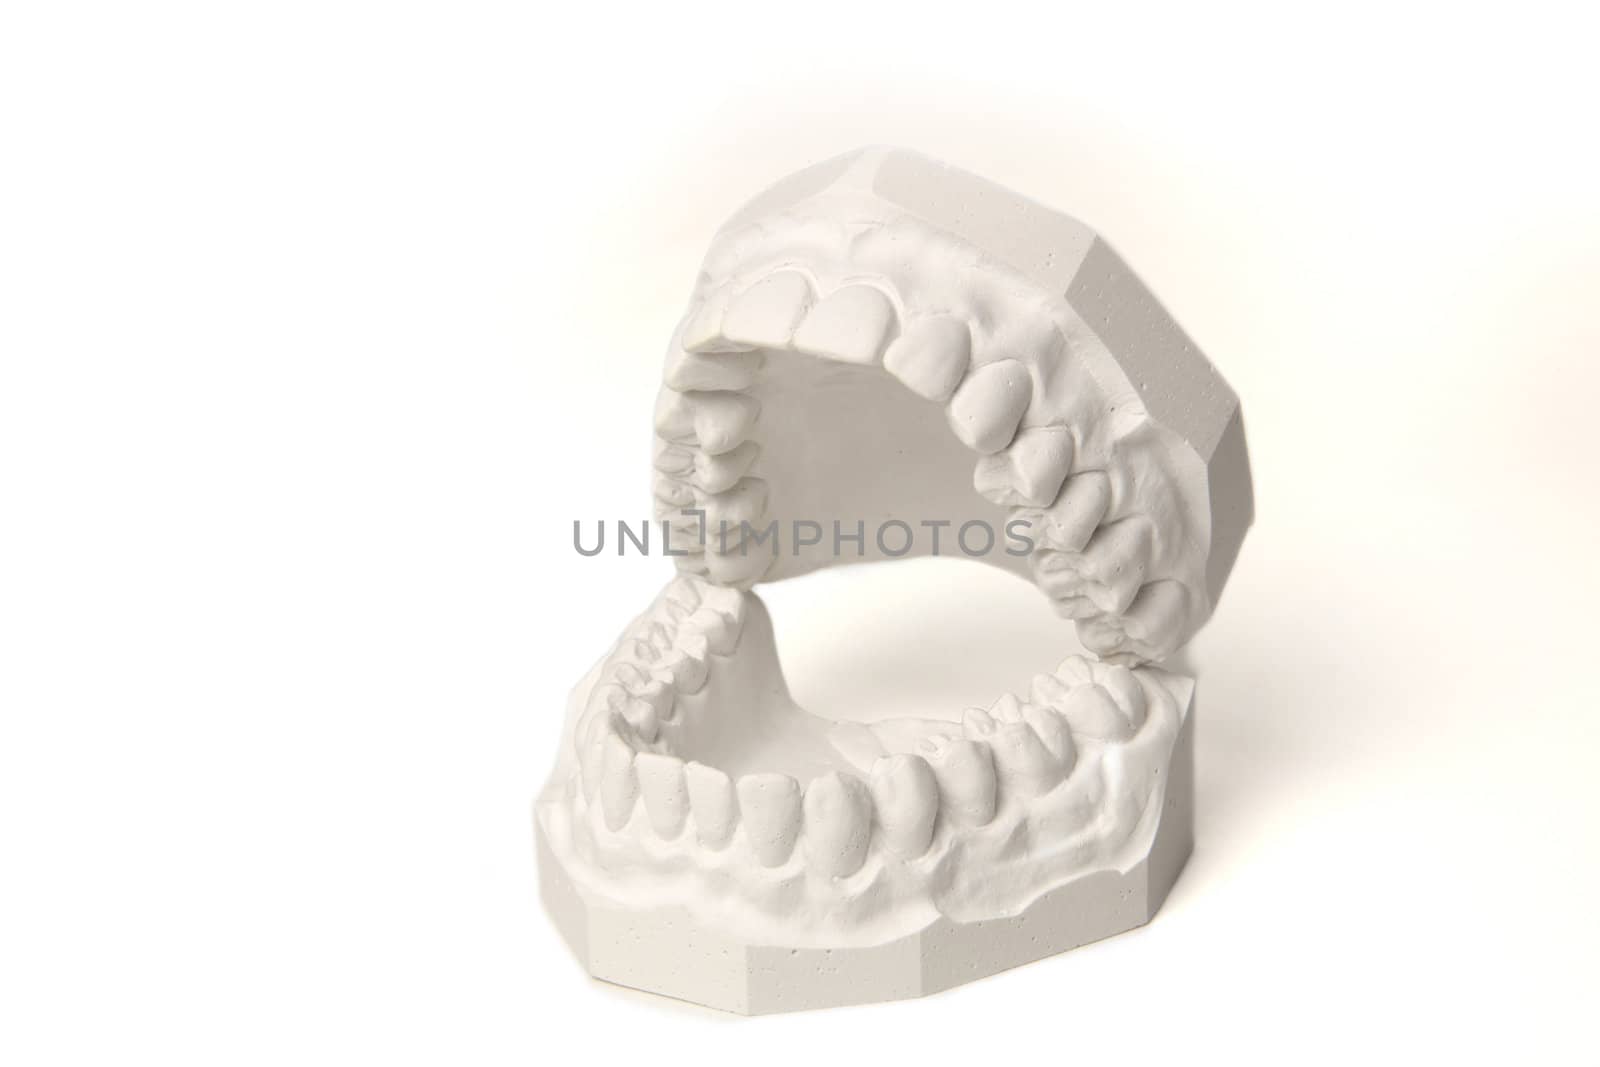 Plaster cast of set of teeth by kaarsten